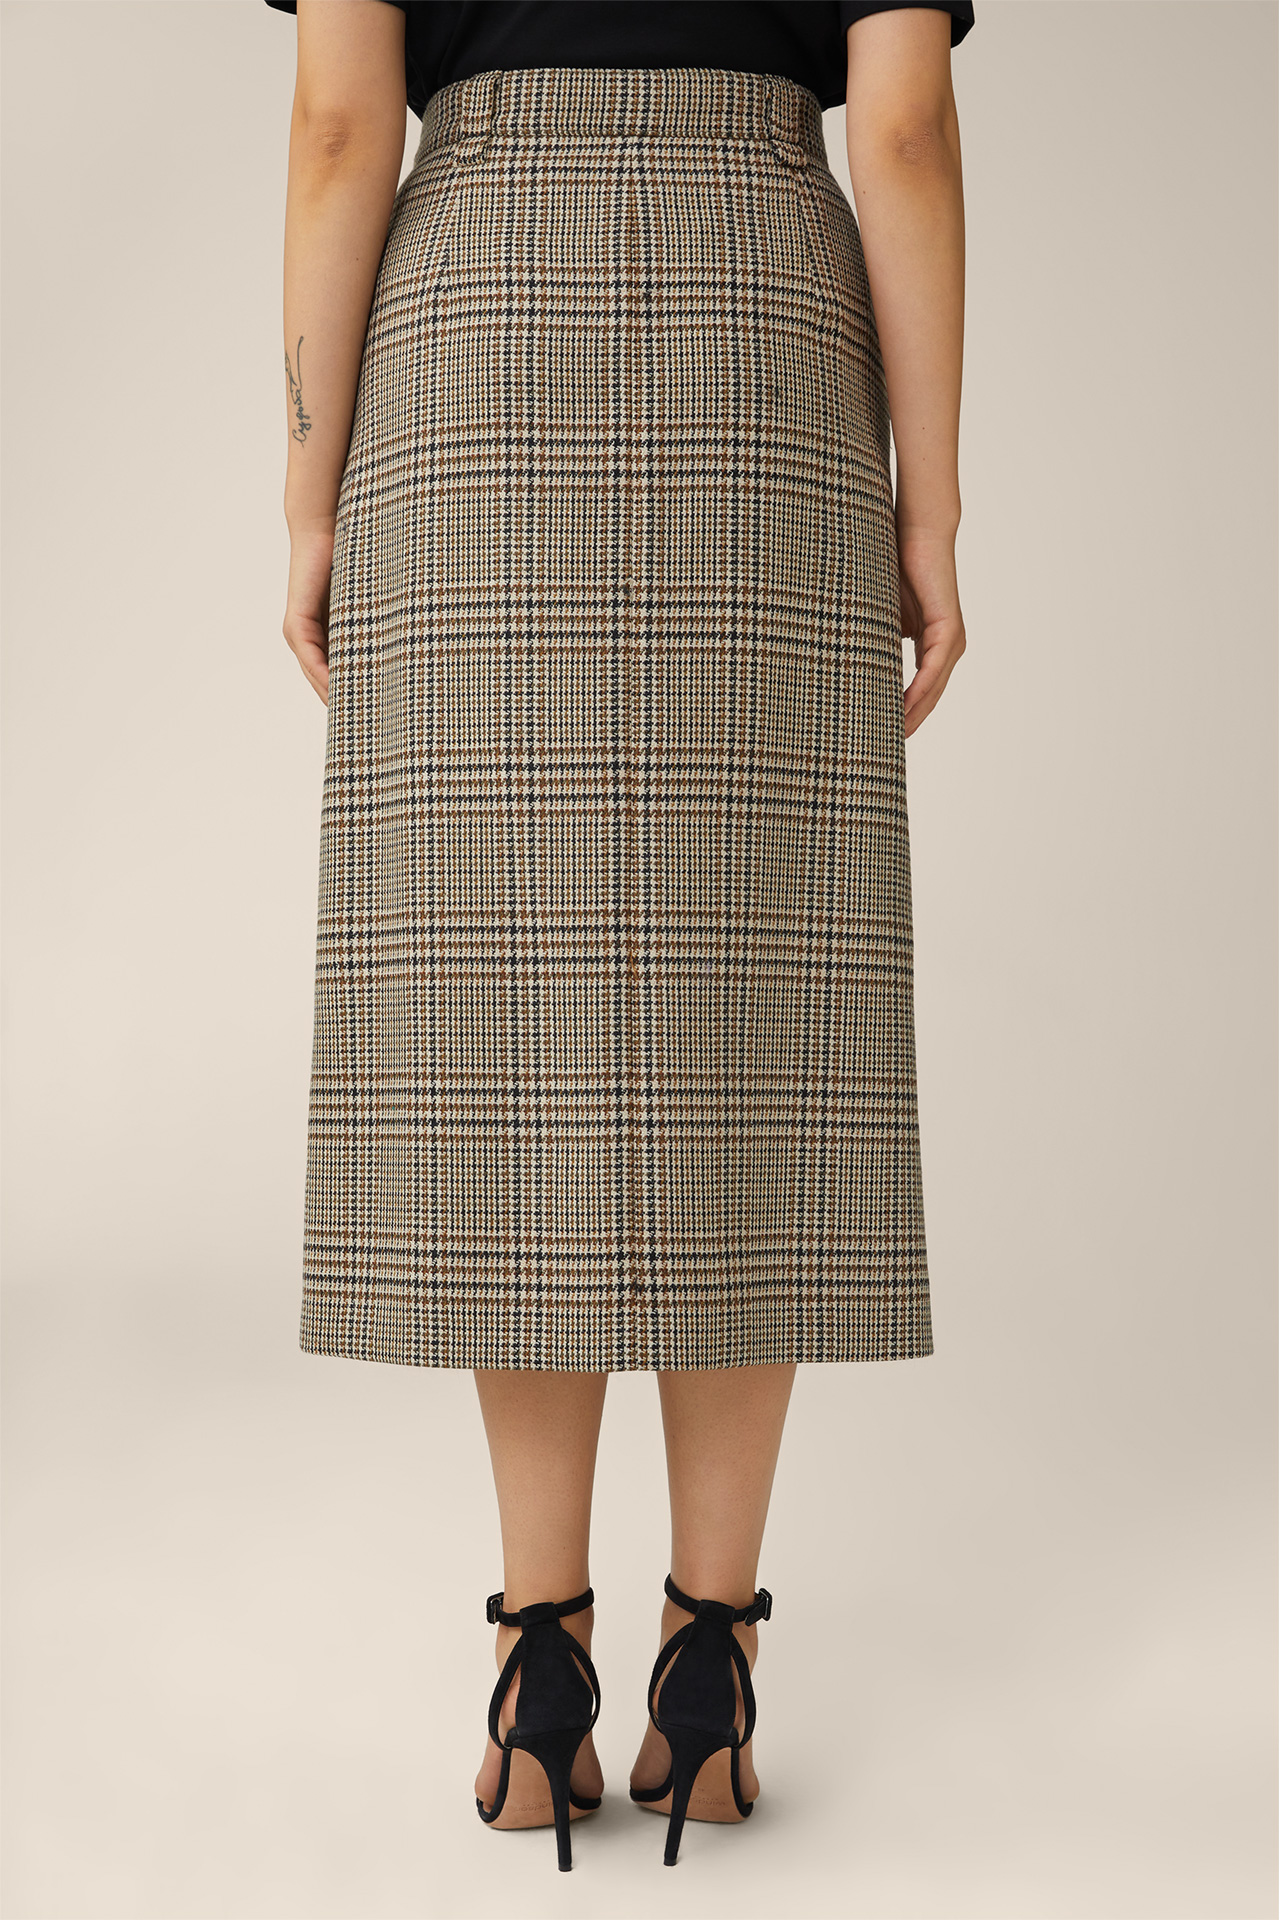 Virgin Wool Pencil Midi Skirt in Beige, Black and Brown Check